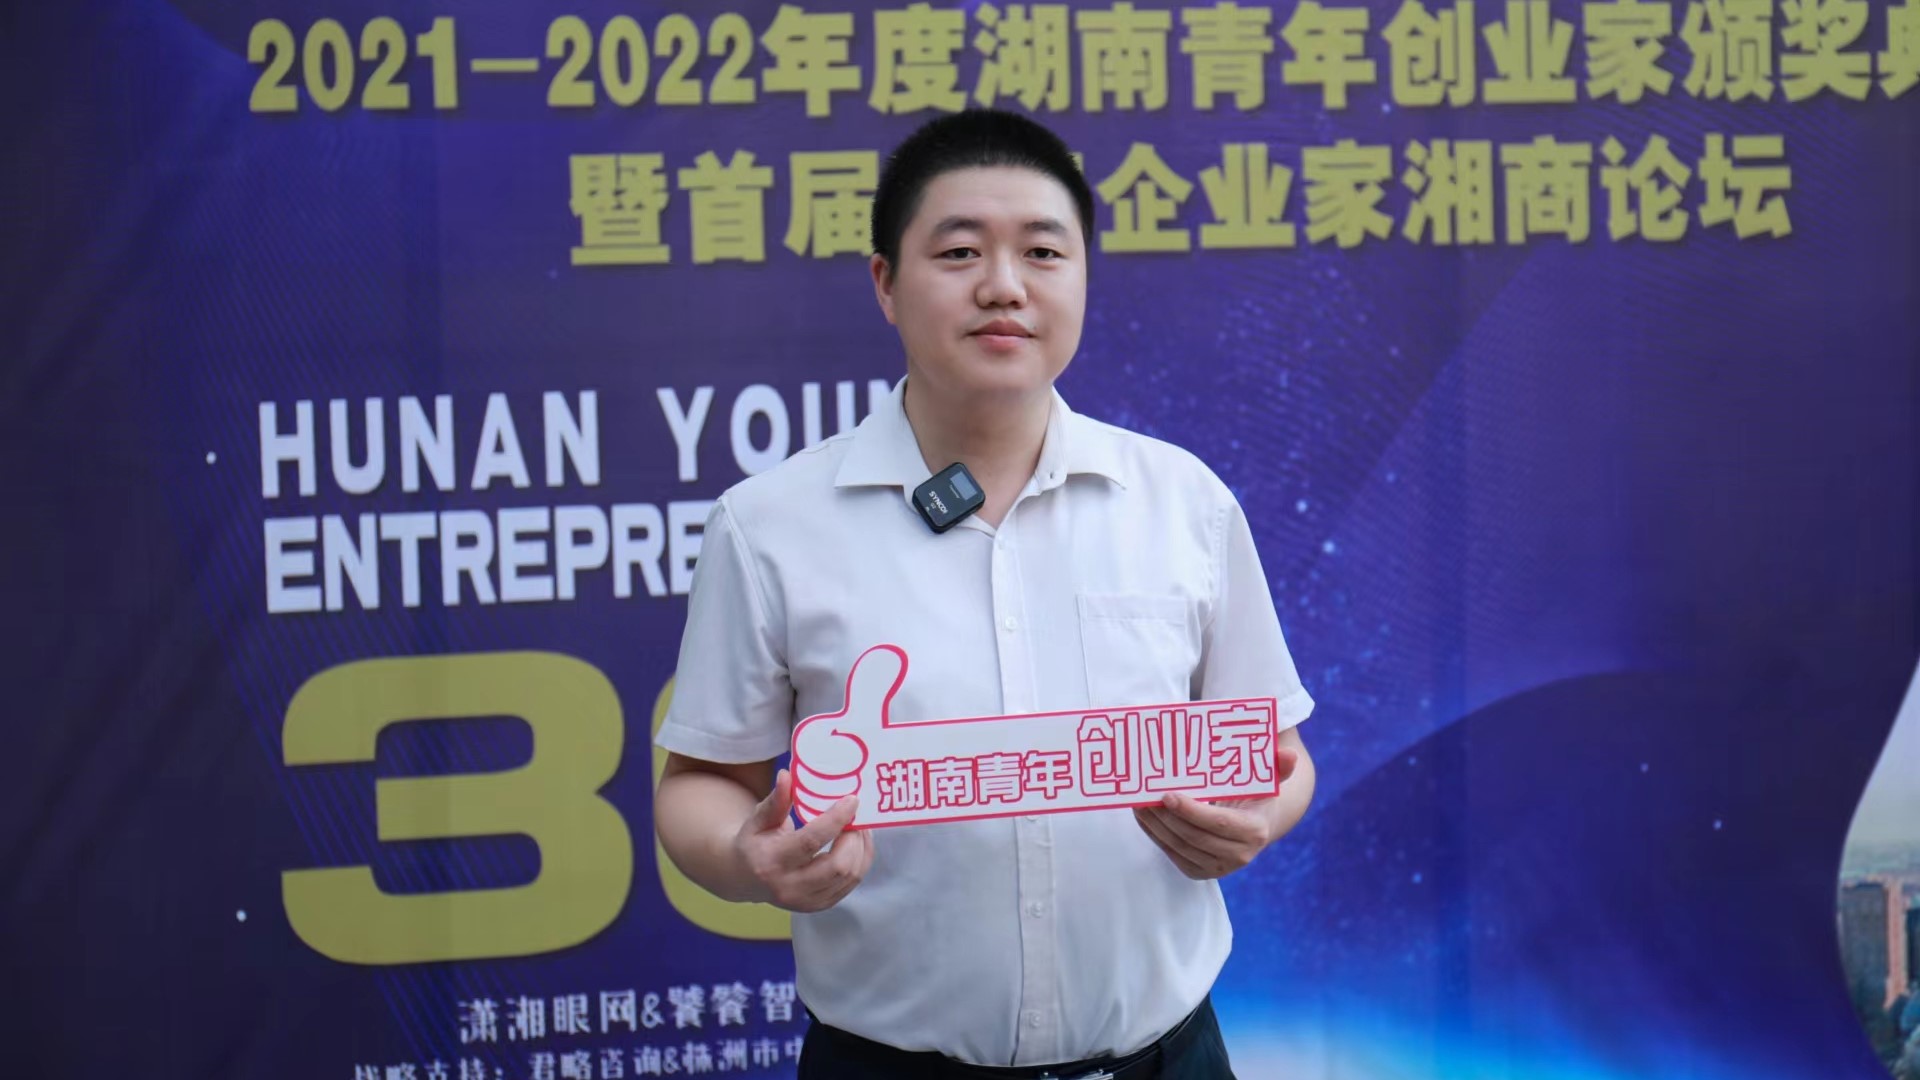 小青苗教育唐正元被授予“2021-2022年度湖南青年创业家”奖